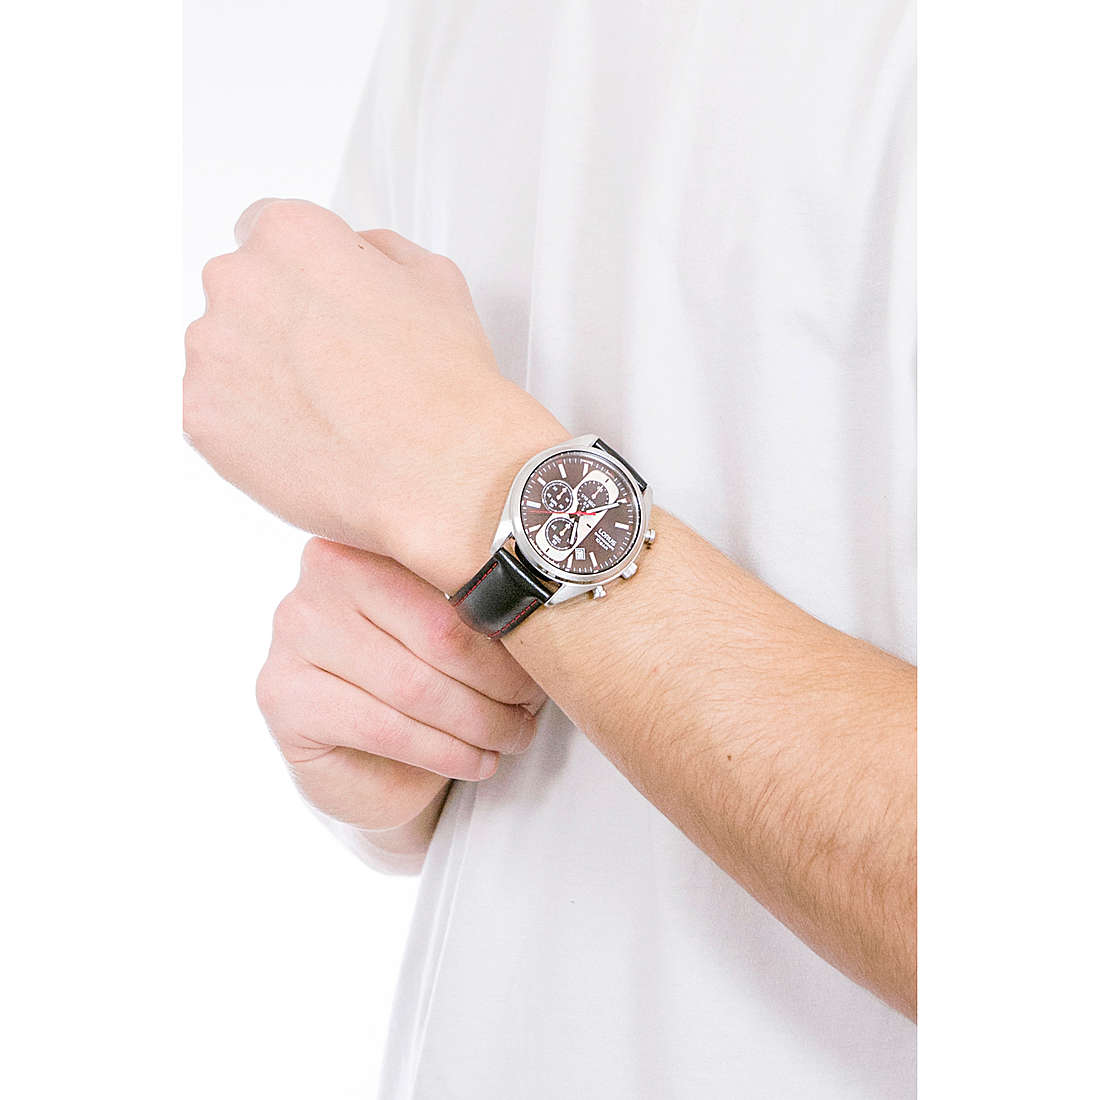 Lorus chronographs man RM359GX9 wearing